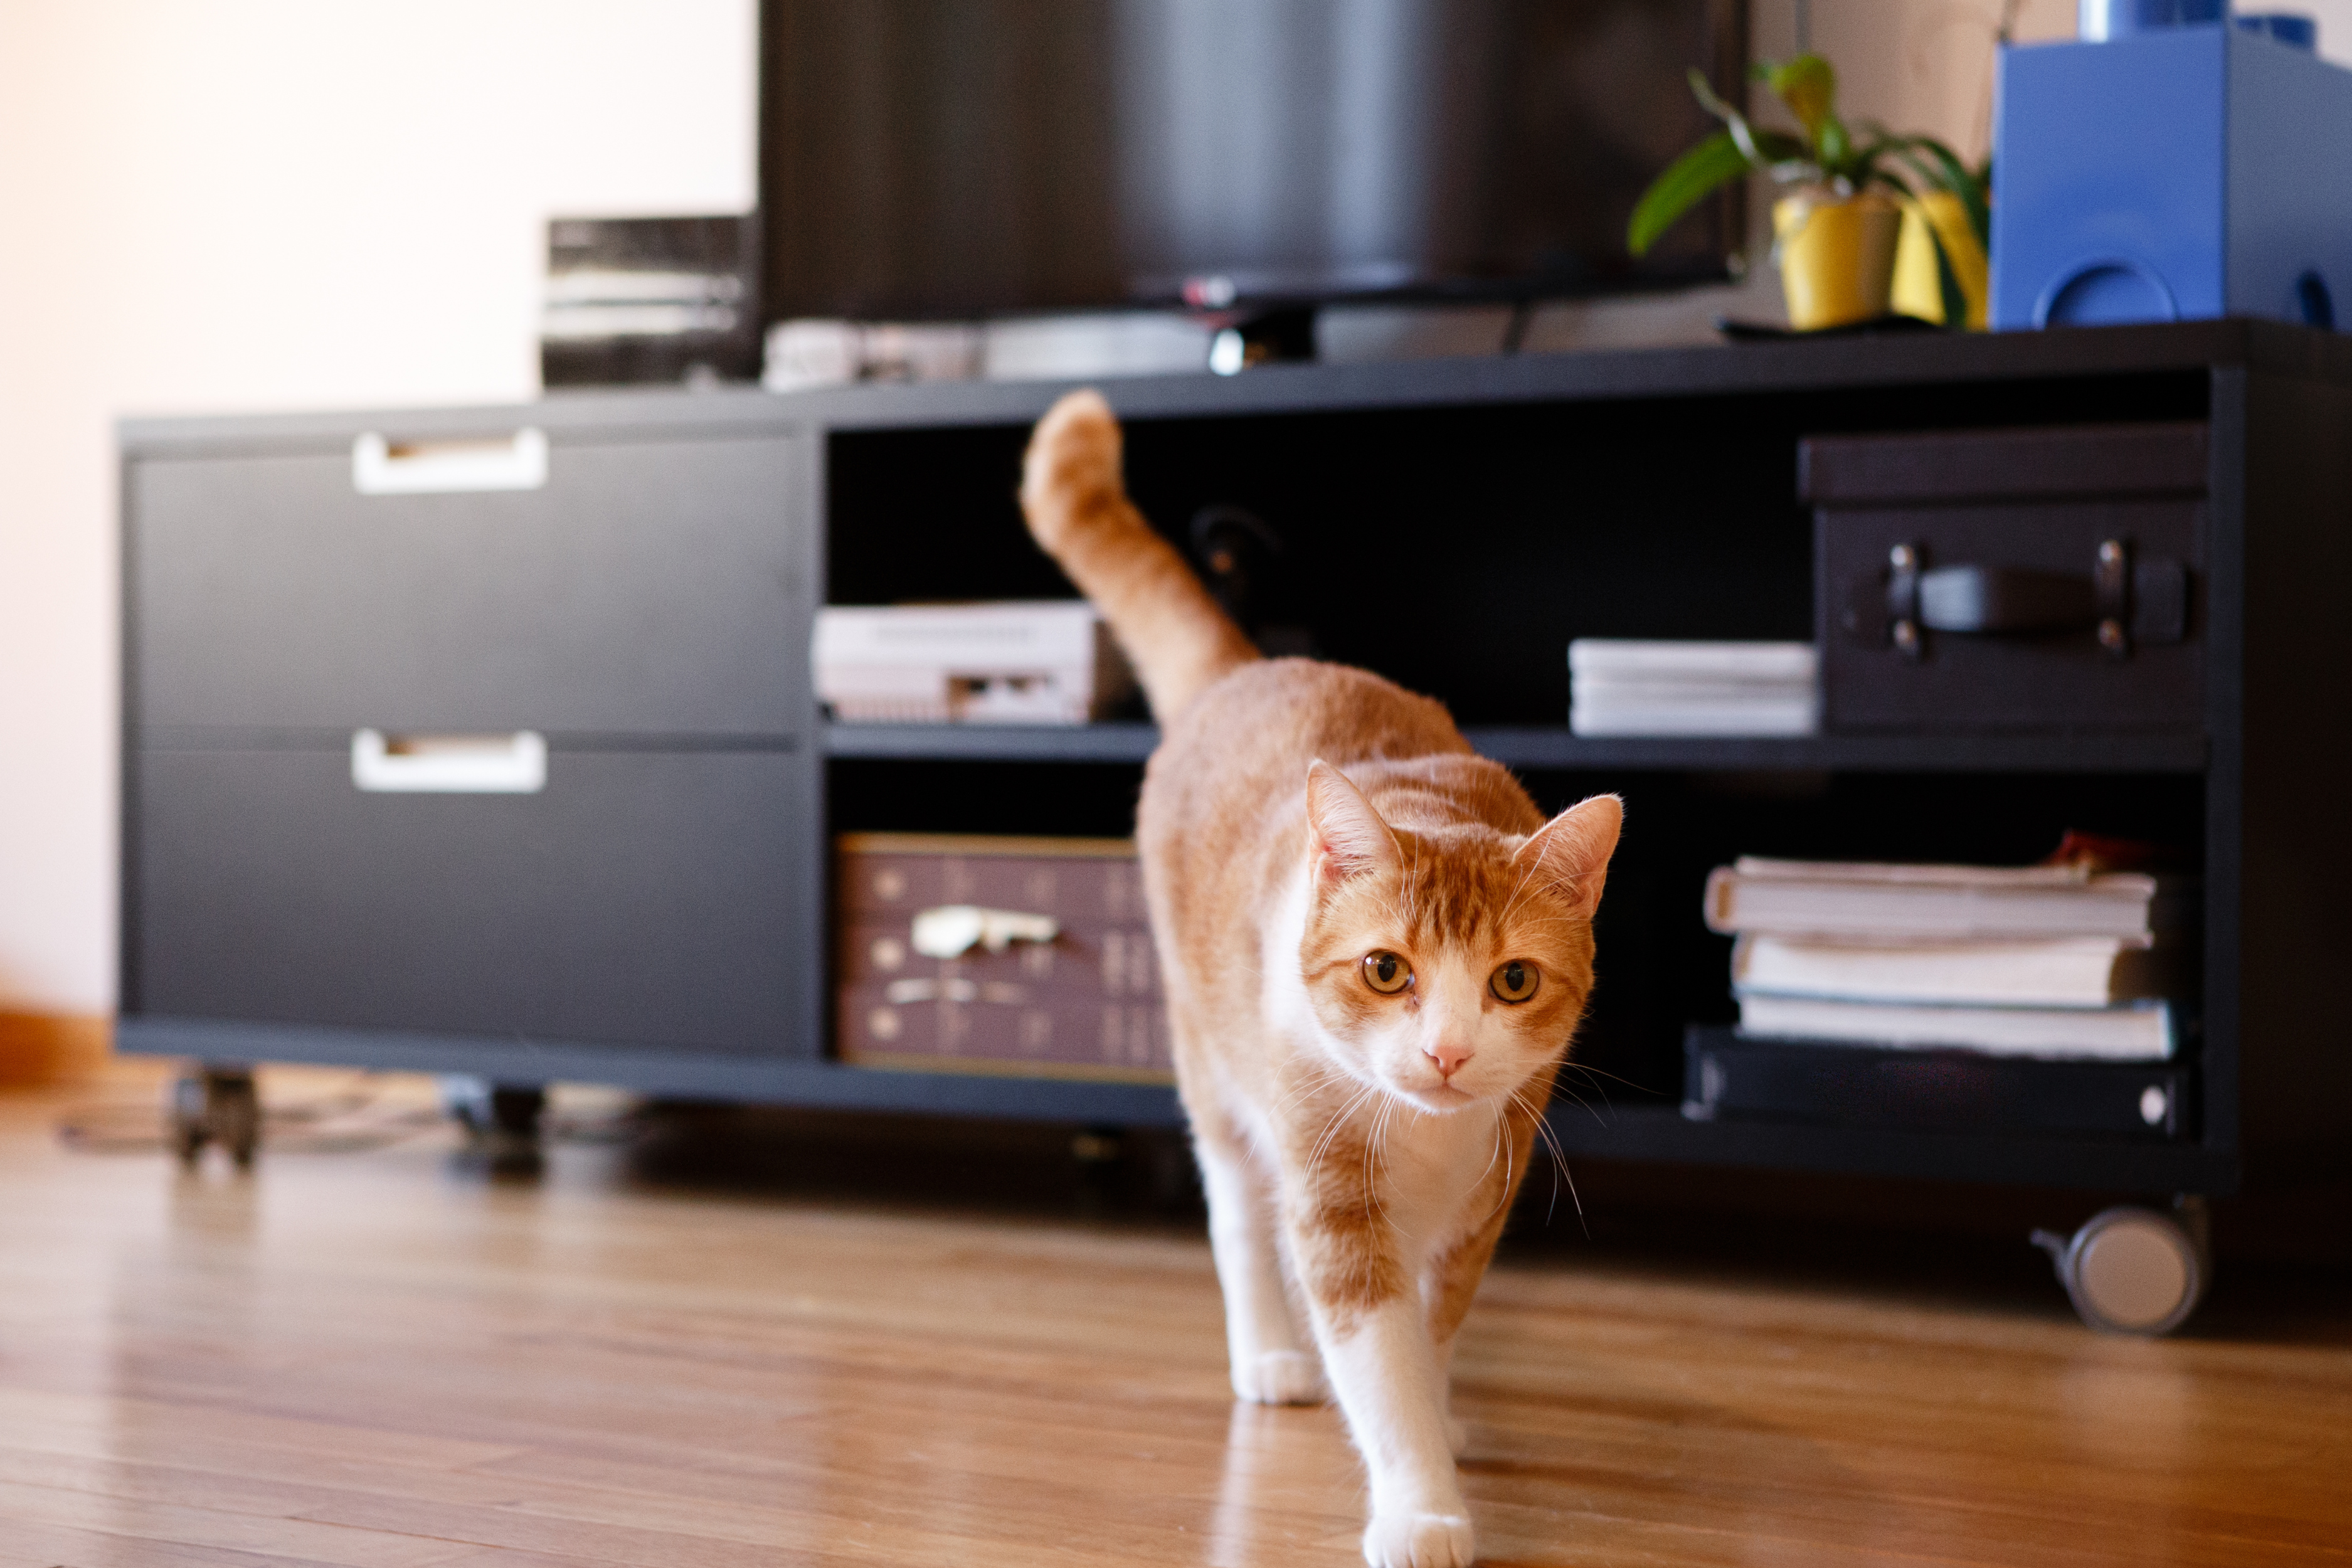 Gato caminando tranquilamente por el suelo de una casa, ilustrando el contexto del post sobre cómo eliminar el olor a orina de gato